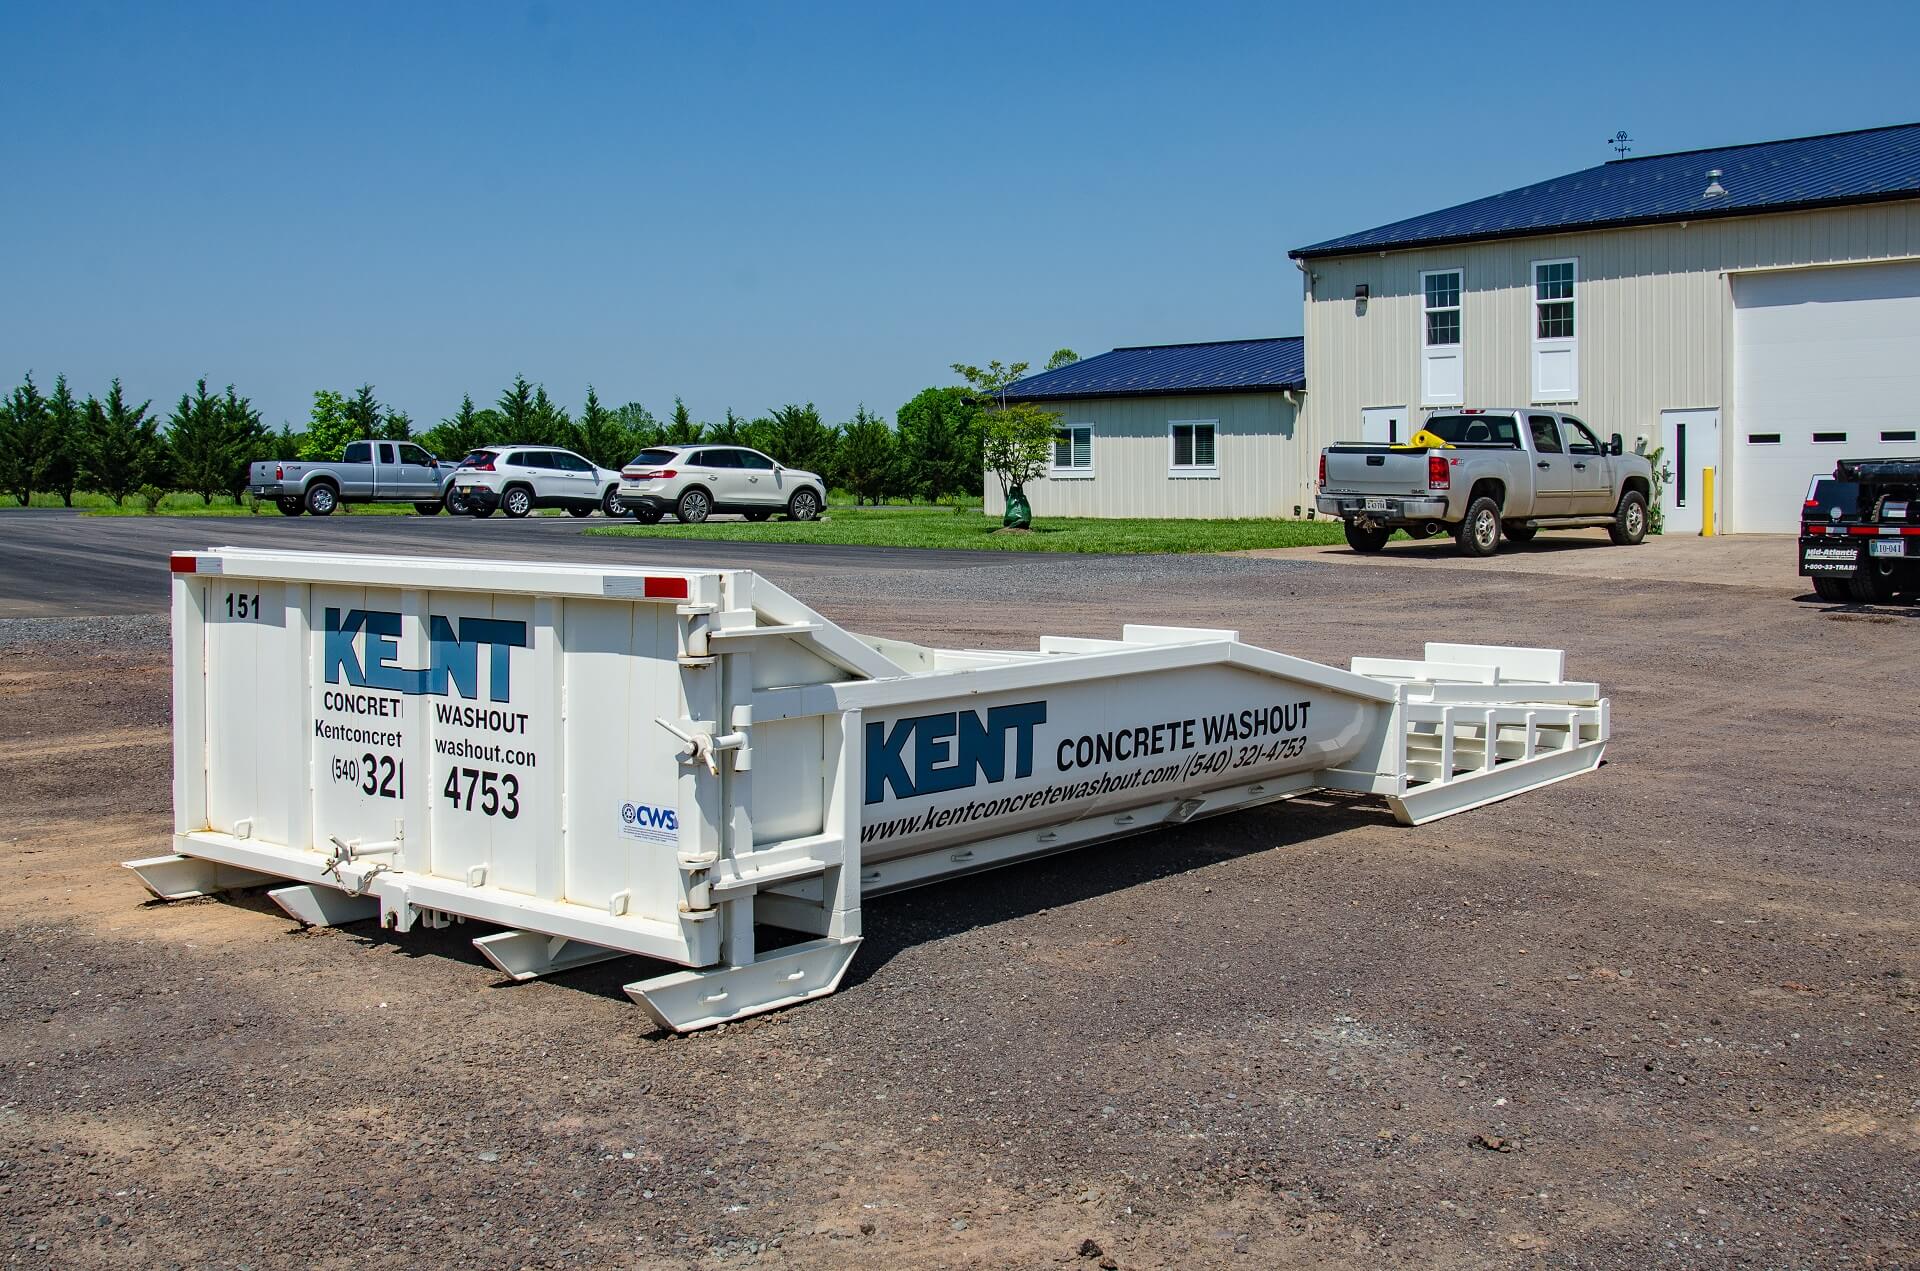 Kent's truck's concrete bed